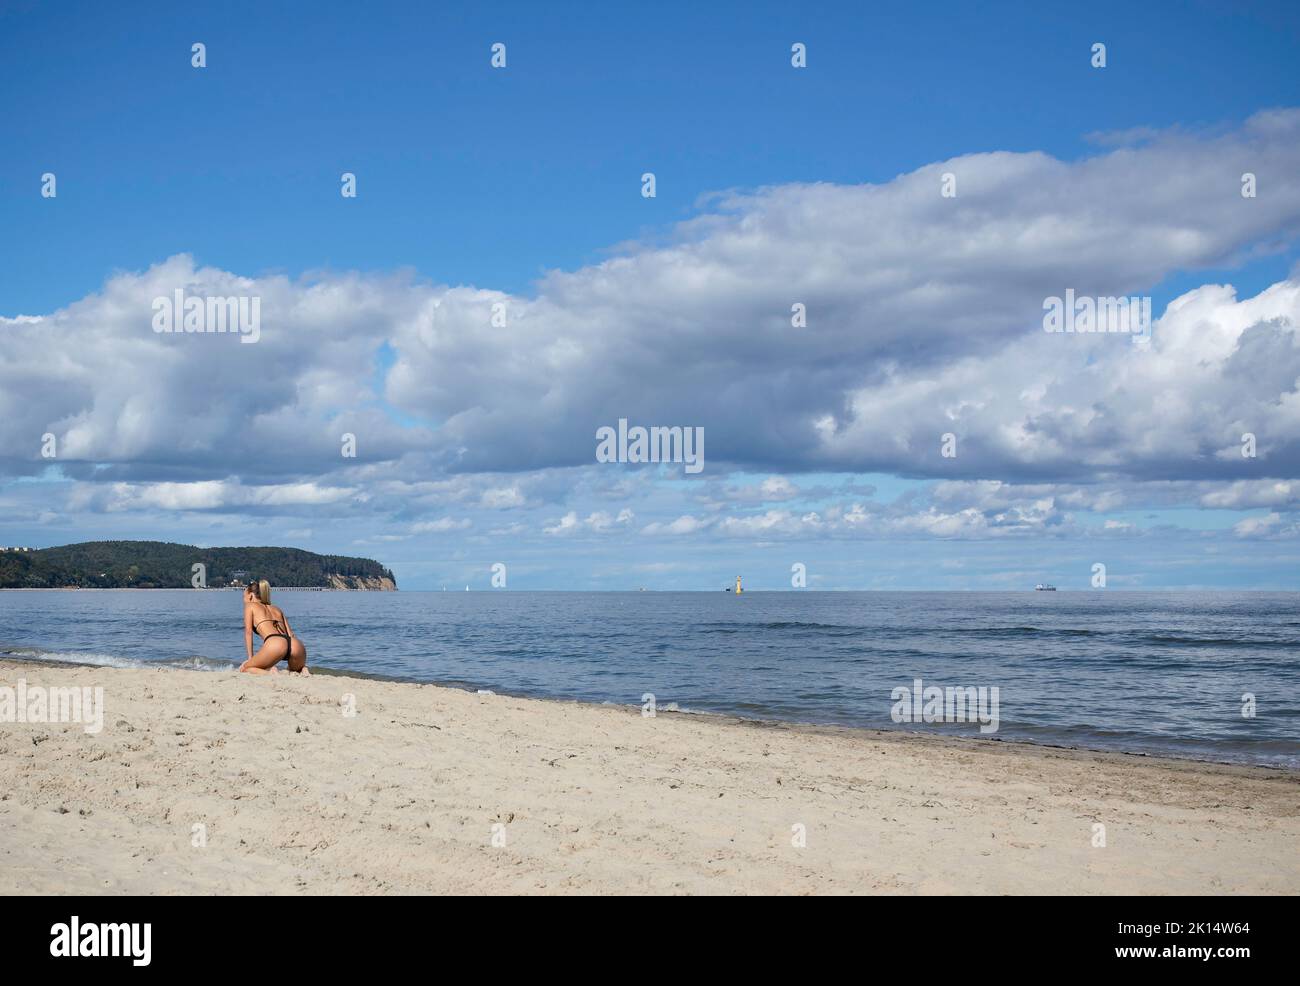 Schöne Frau am Strand, wolkiger Himmel, sonniges Wetter, schöner Boden. Stockfoto